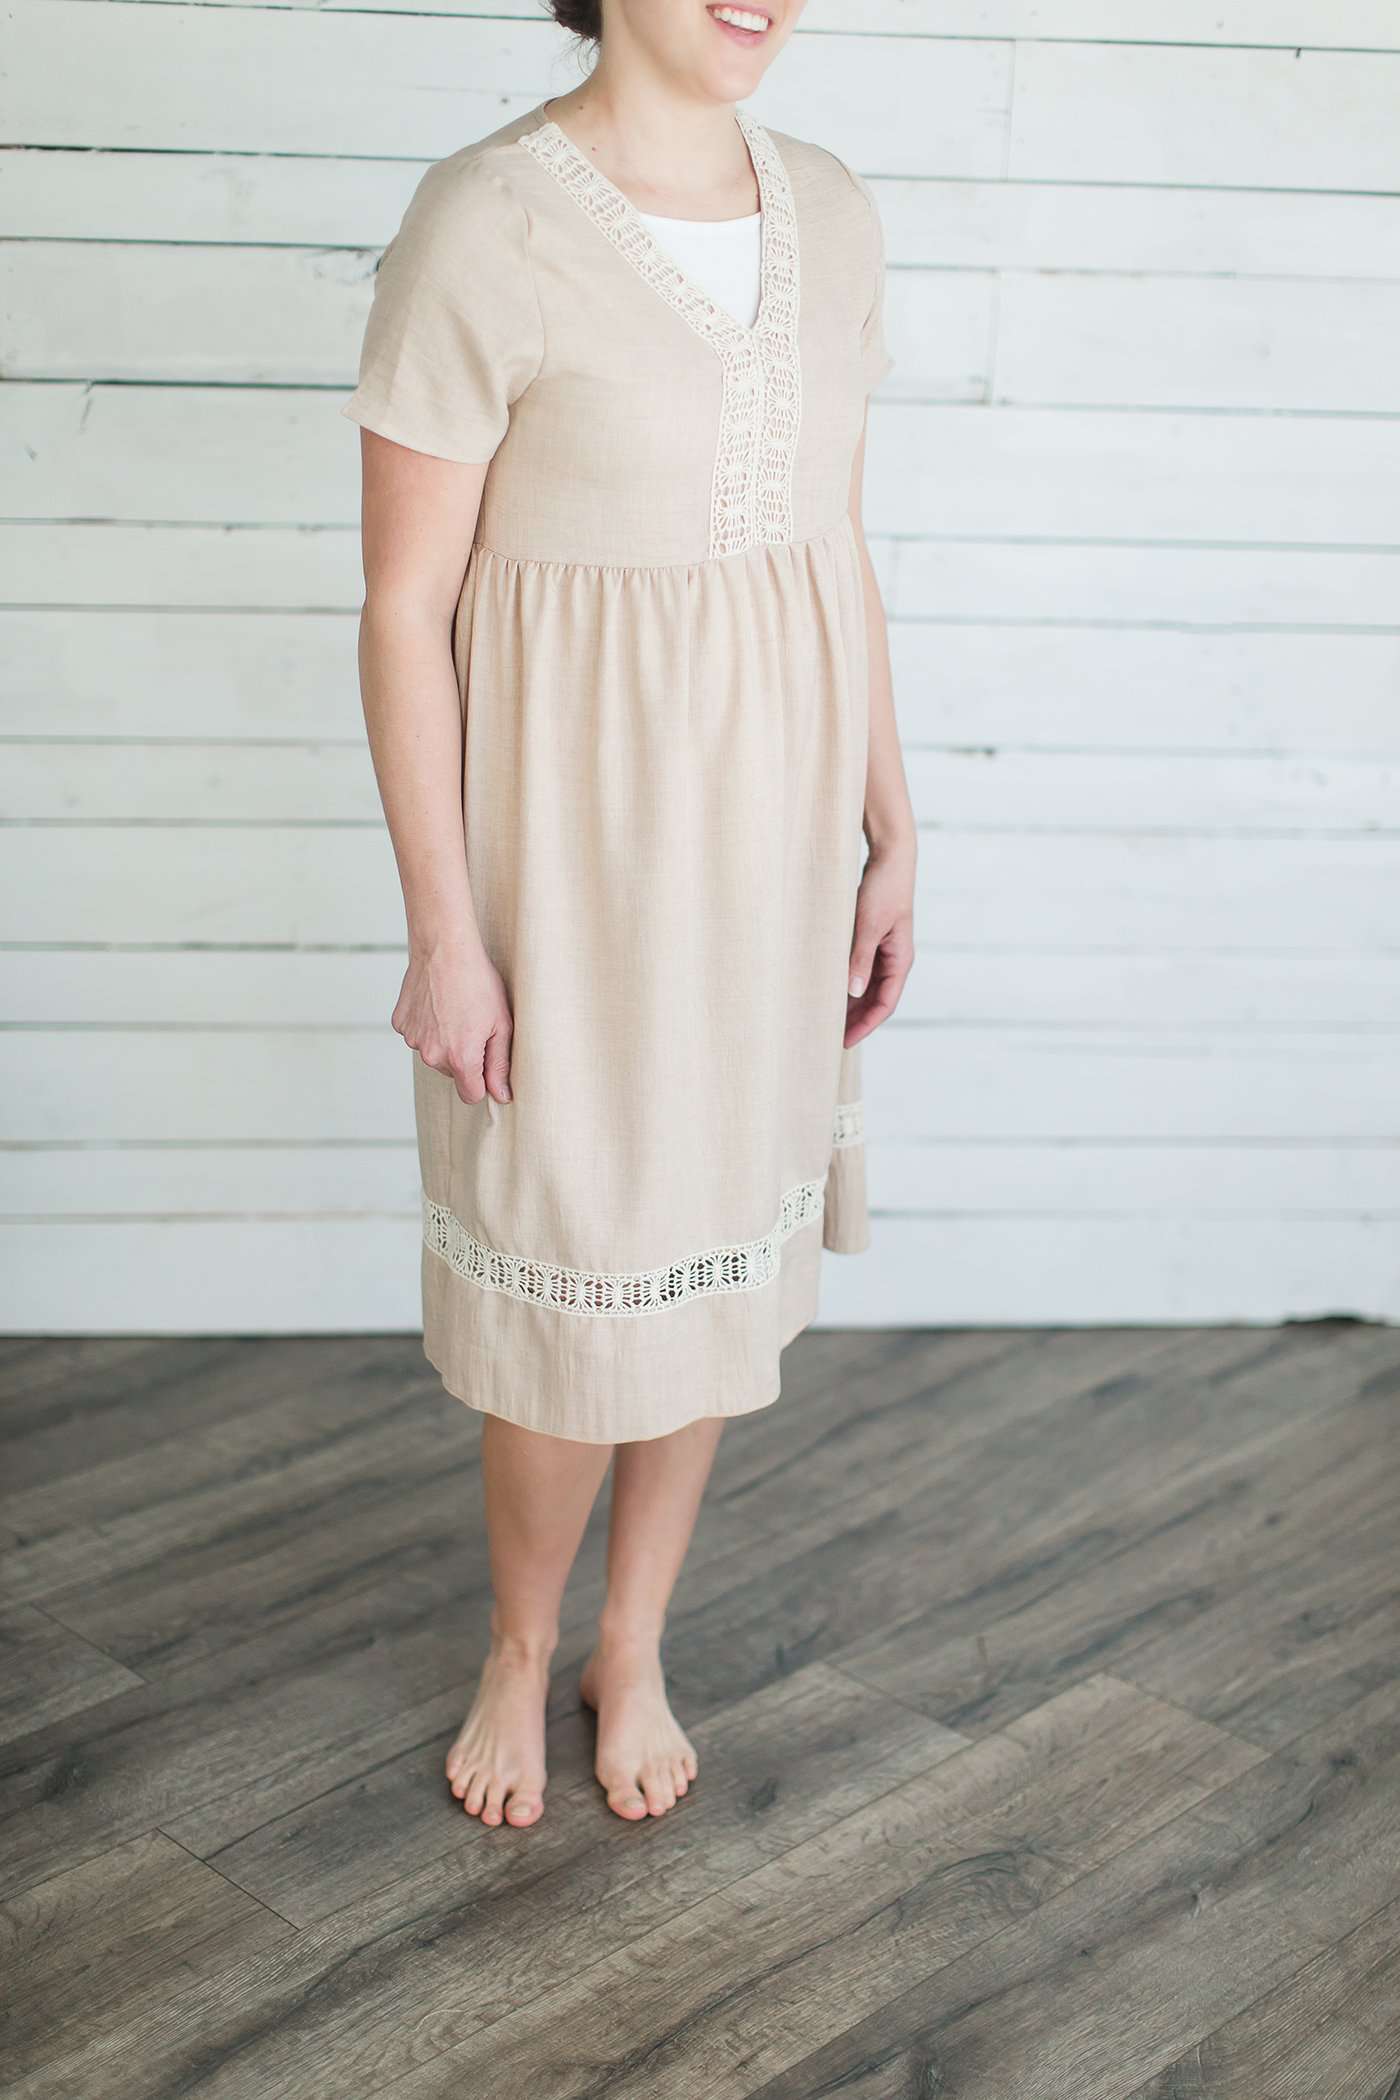 Lace Trim Tunic Dress - FINAL SALE Dresses